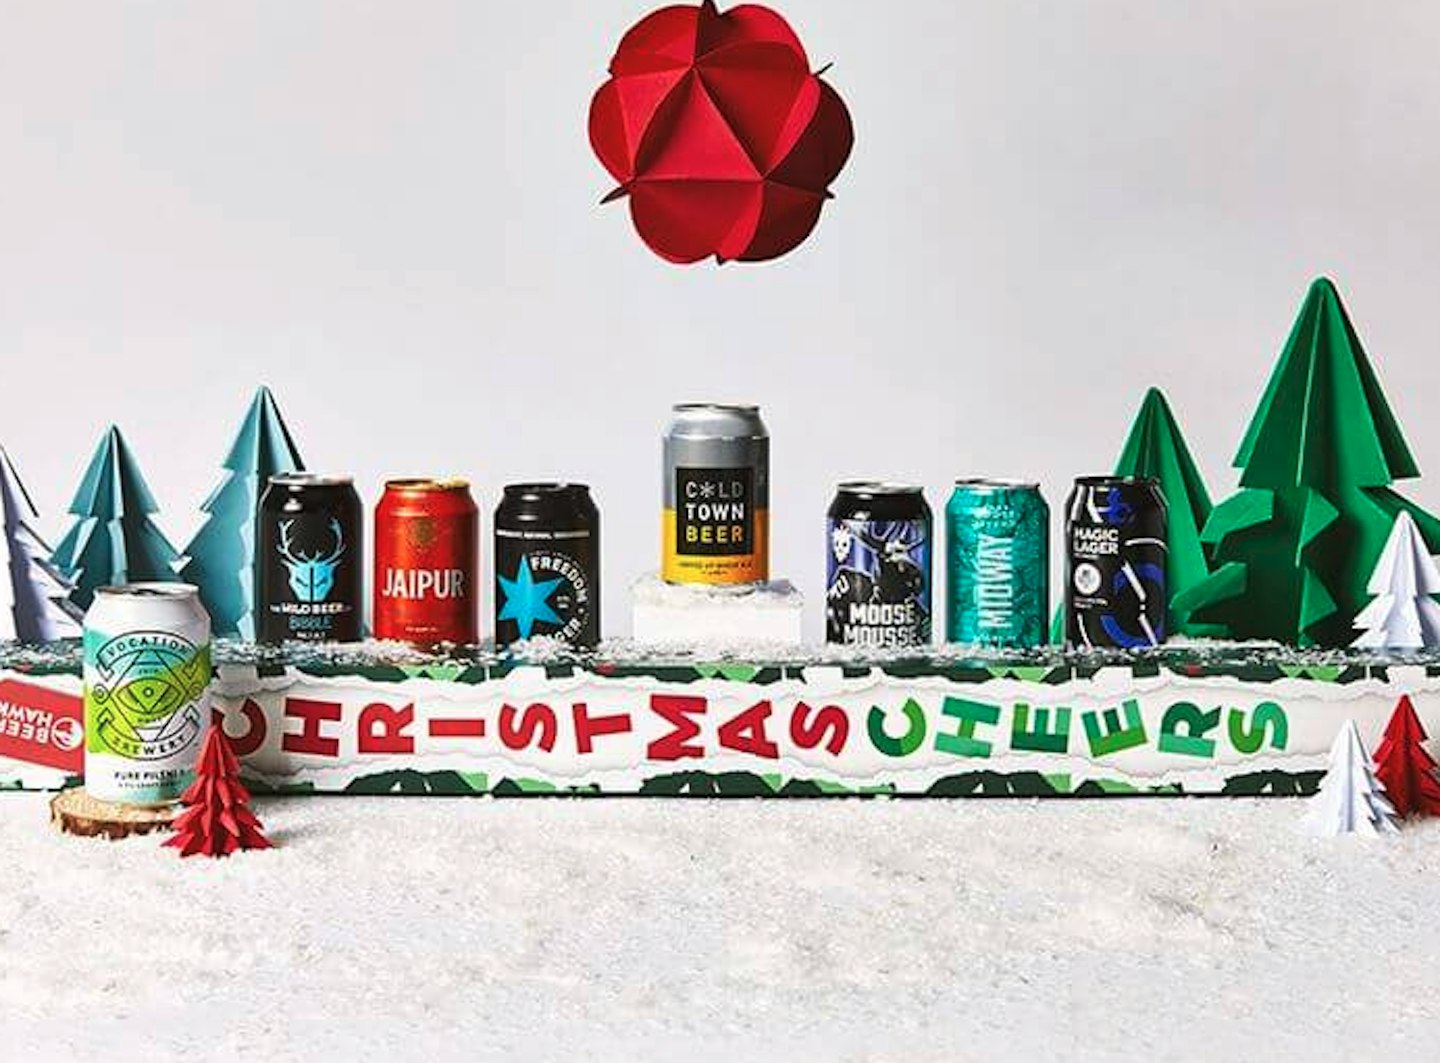 Beer Hawk Christmas Yard of Ale